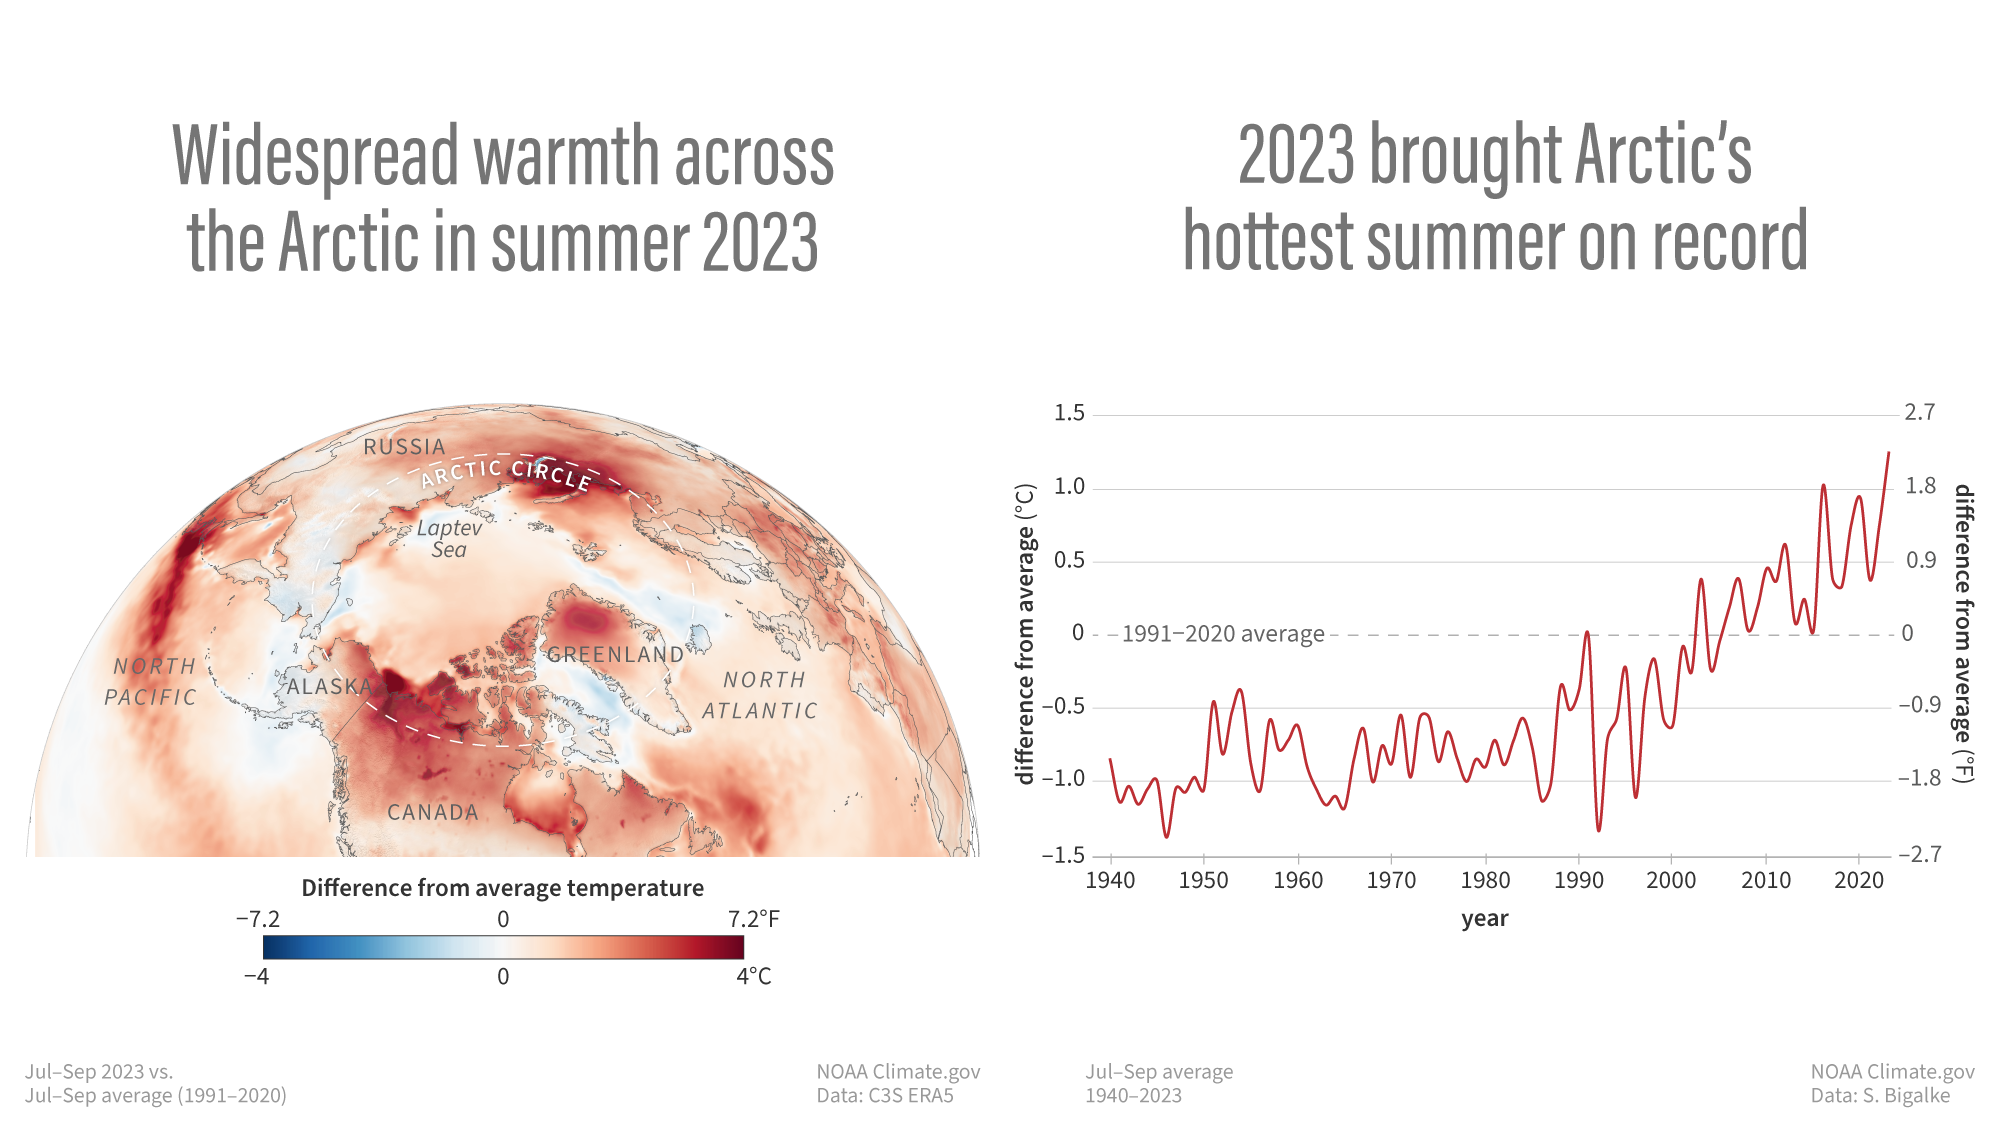 Η εικόνα που δείχνει έναν χάρτη και ένα γράφημα που αντιπροσωπεύει το καλοκαίρι (Ιούλιος-Σεπτέμβριος) του 2023 ήταν το πιο καυτό στην Αρκτική που έχει καταγραφεί.